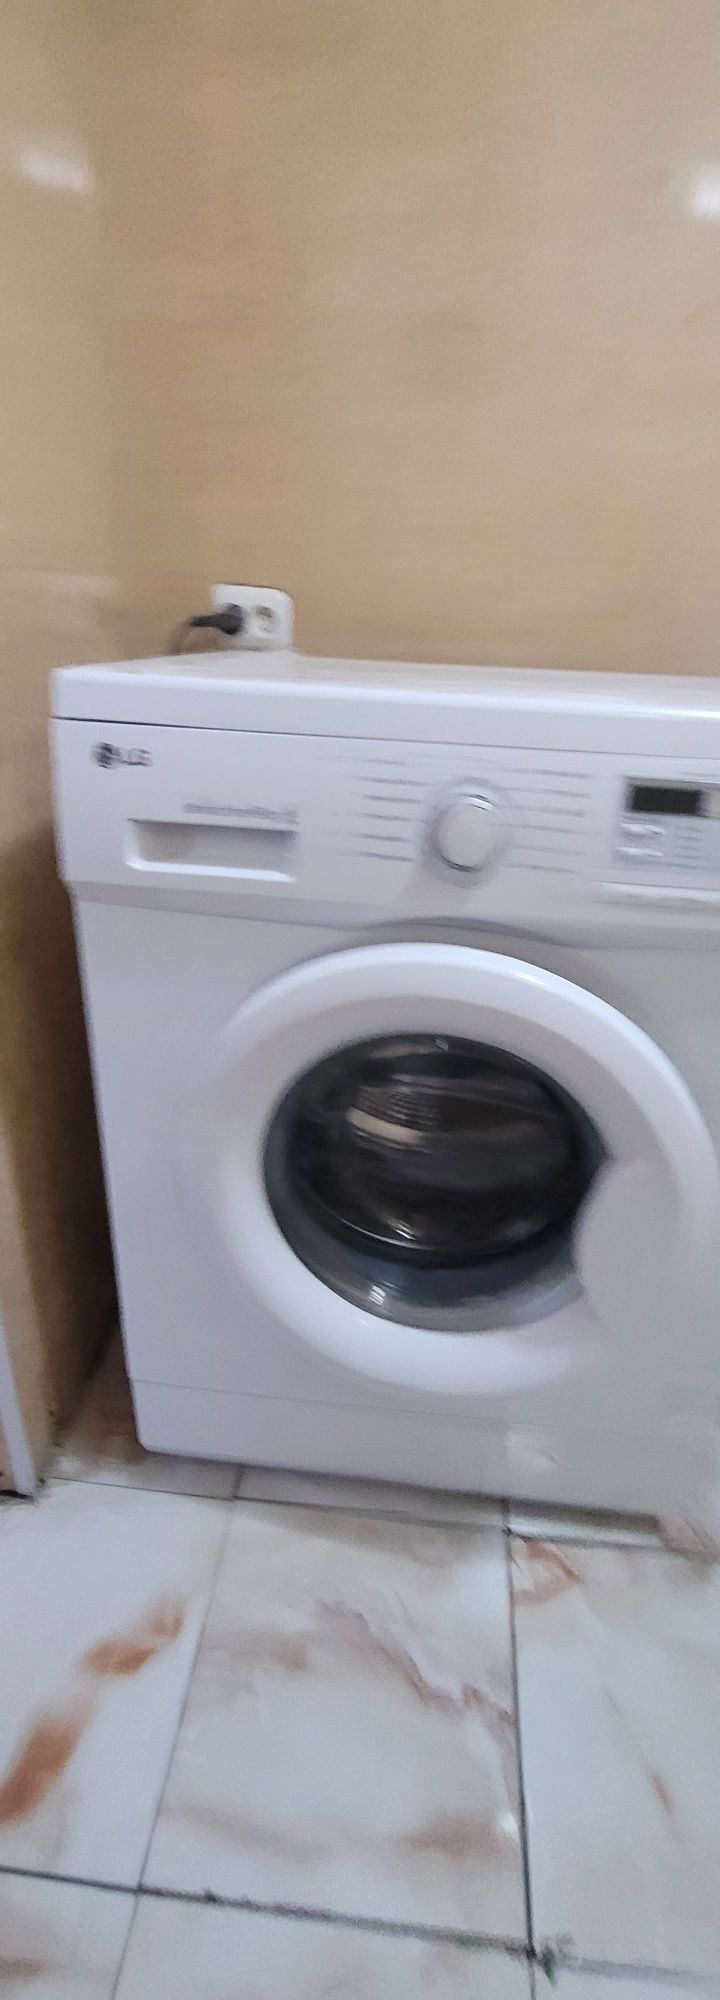 Срочно недорого продаётся стиральная машина LG